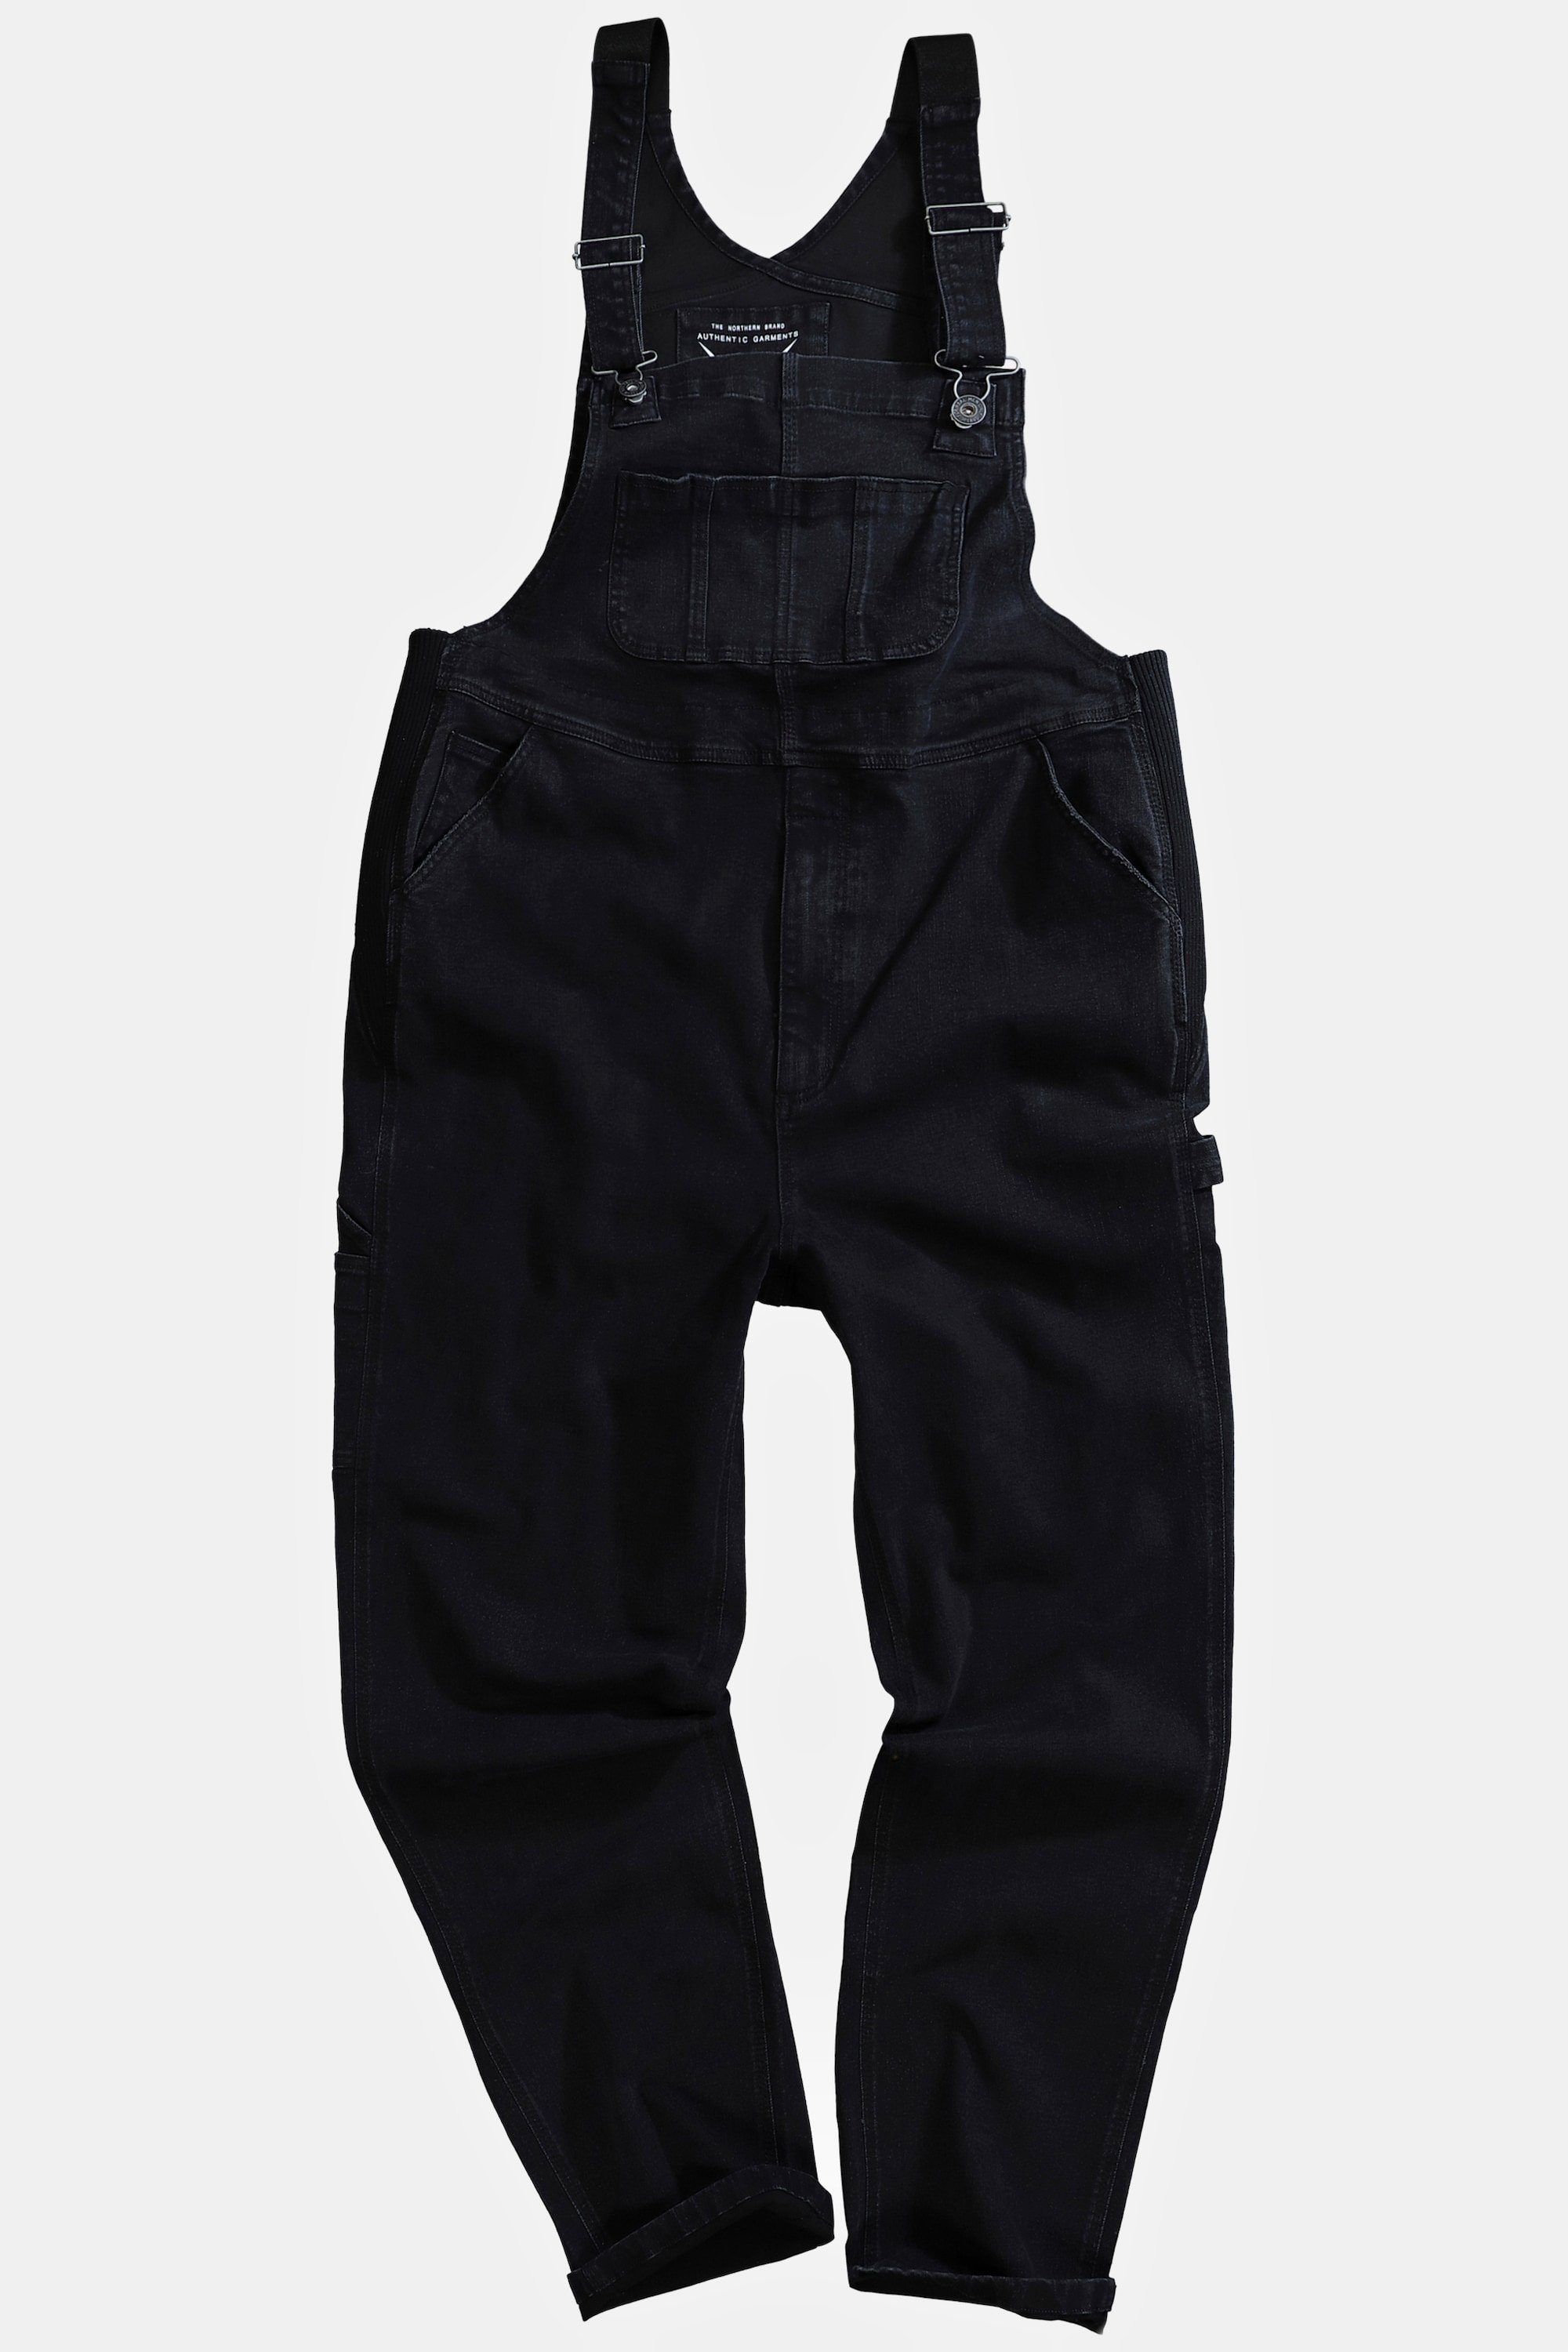 JP1880 Cargohose Fit Workwear Latzhose Jeans viele schwarz Taschen Relaxed